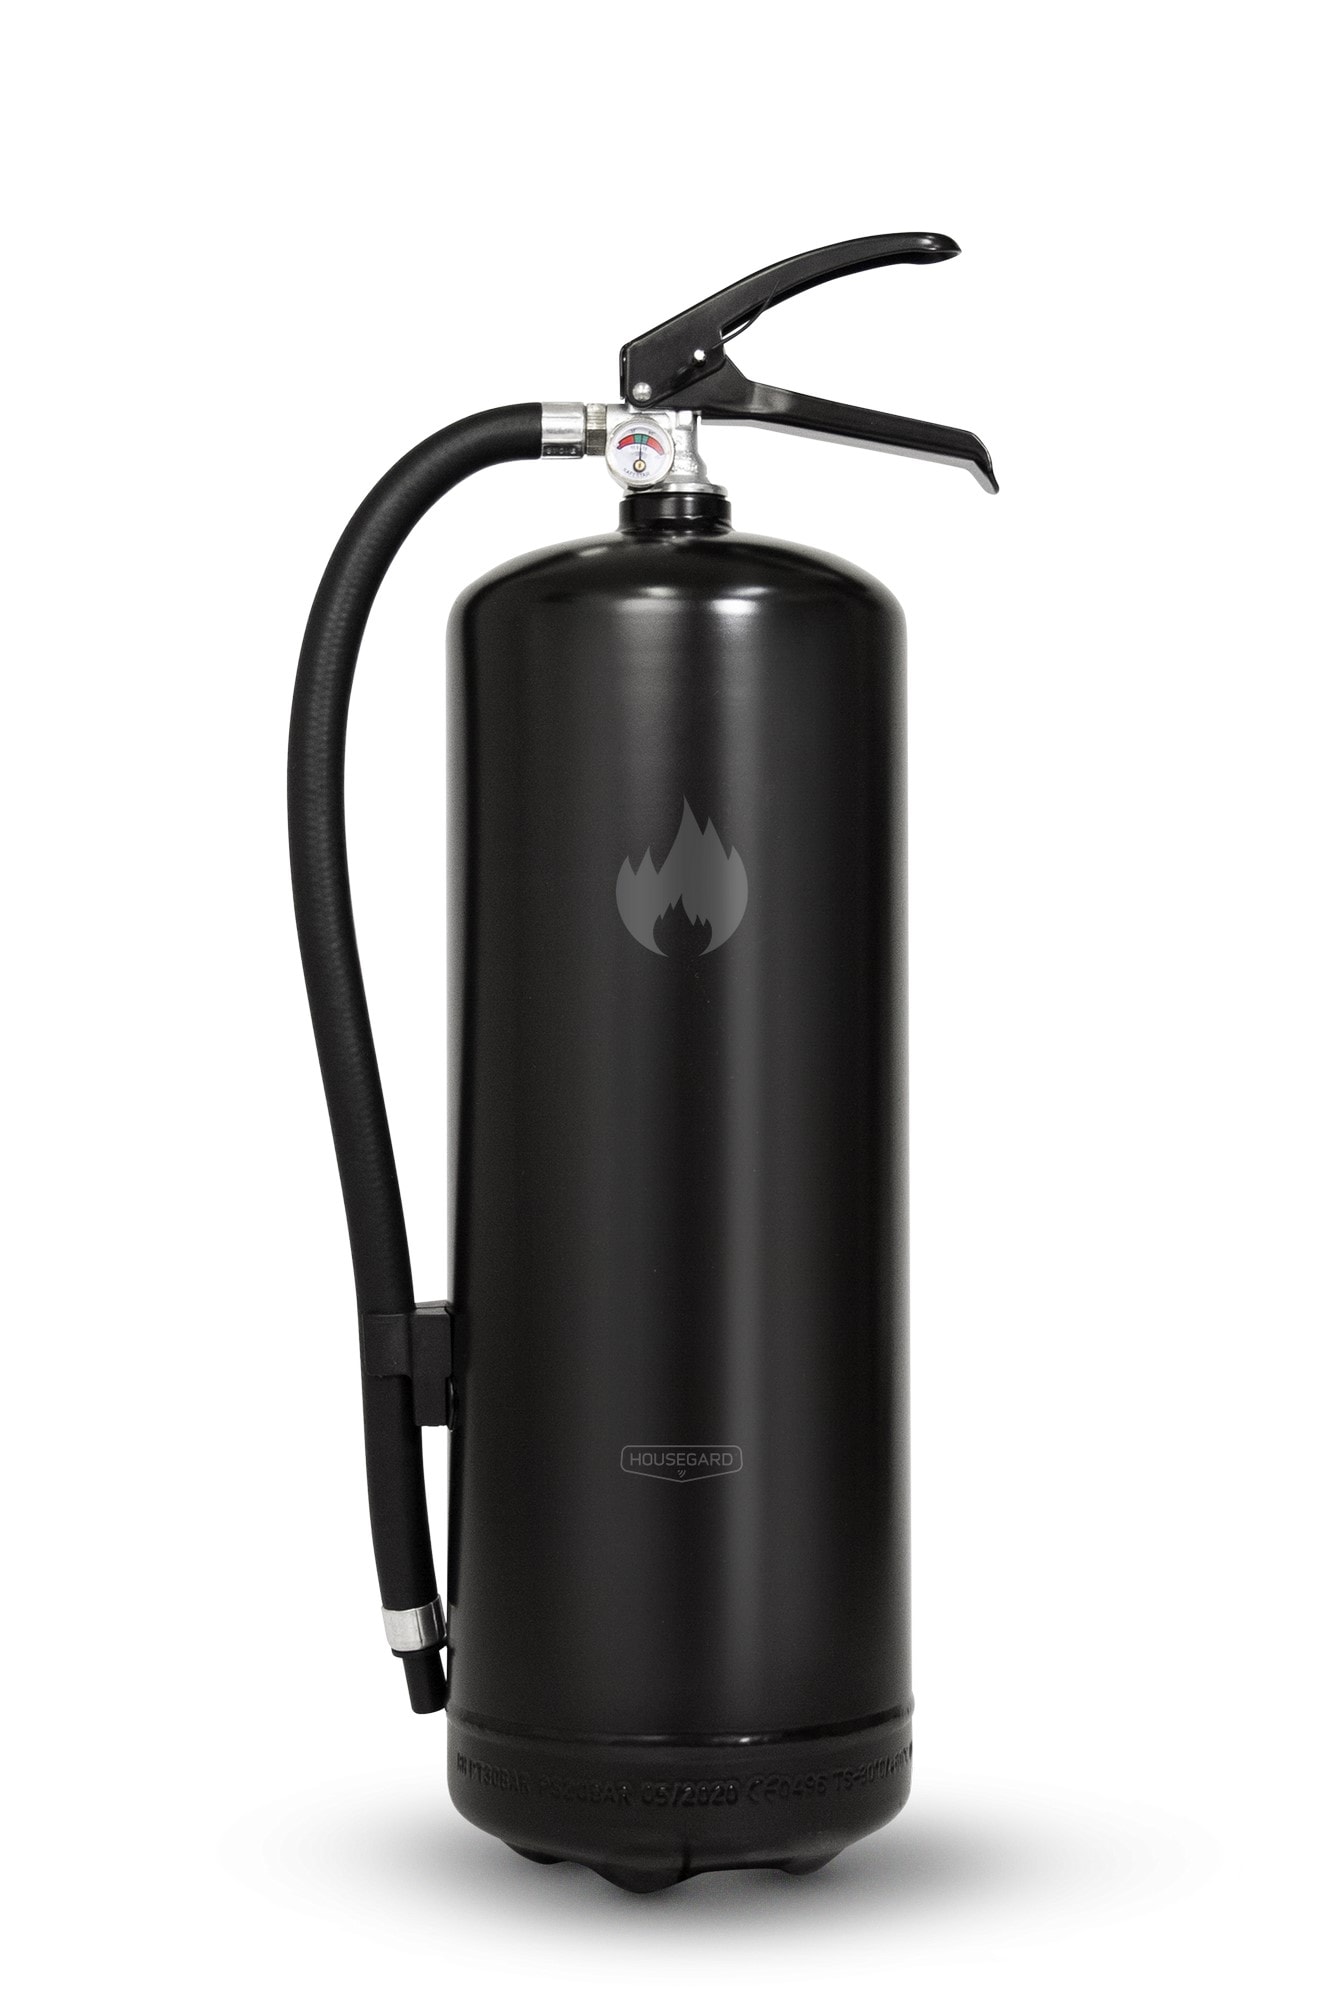 Design by Housegard  Fire Extinguisher, 6kg Powder, Black